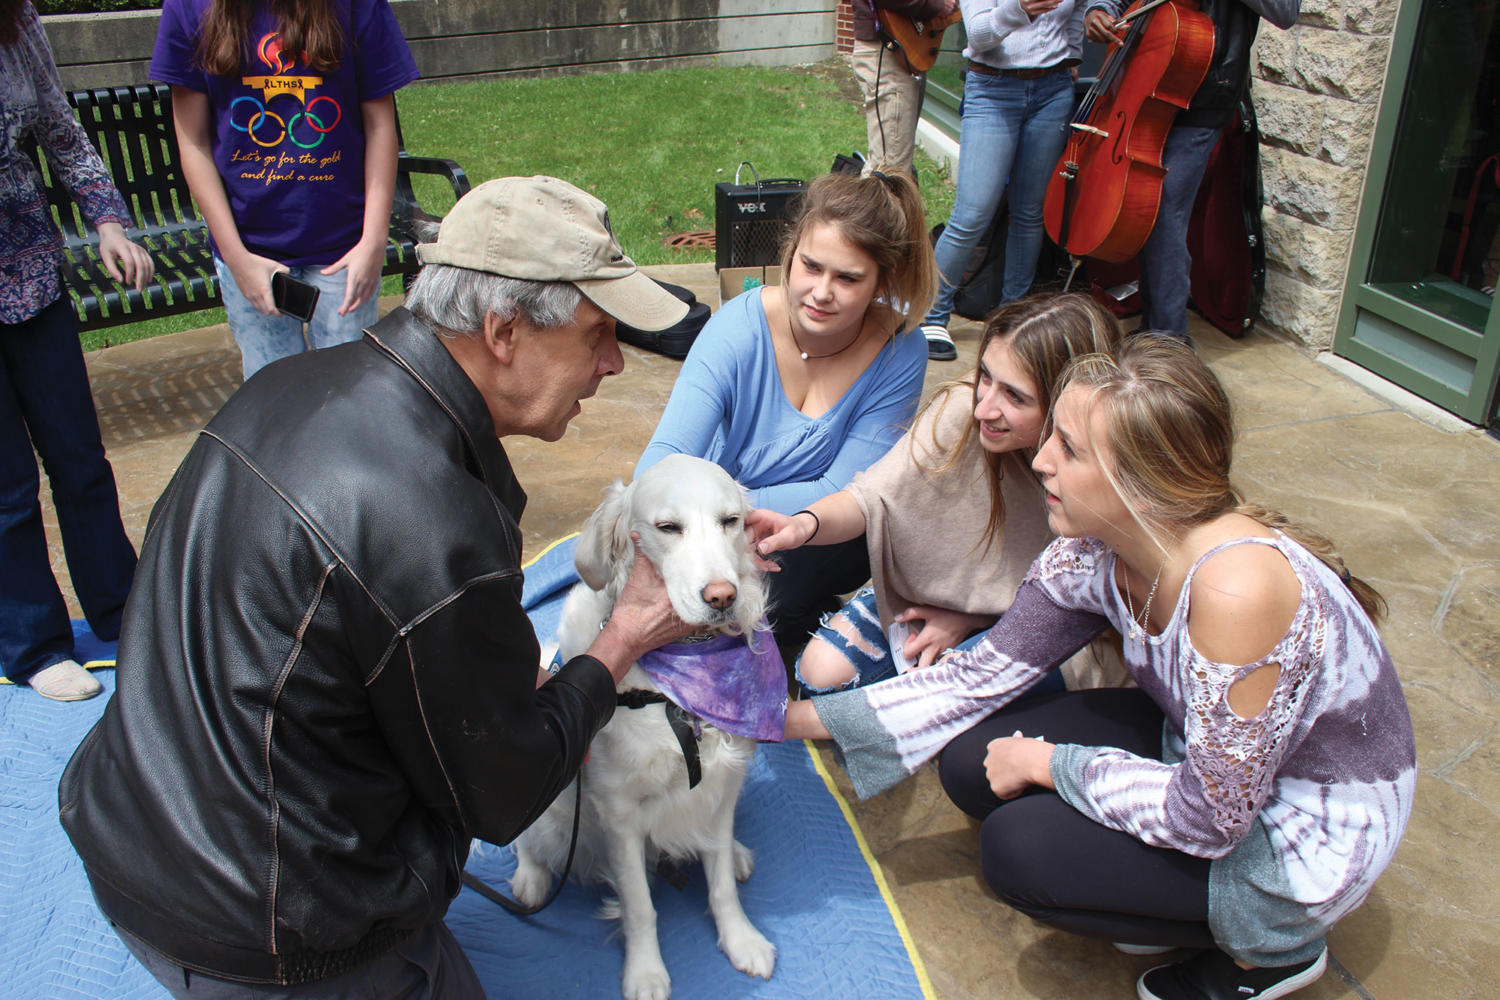 Comfort dog helps students de-stress at NC